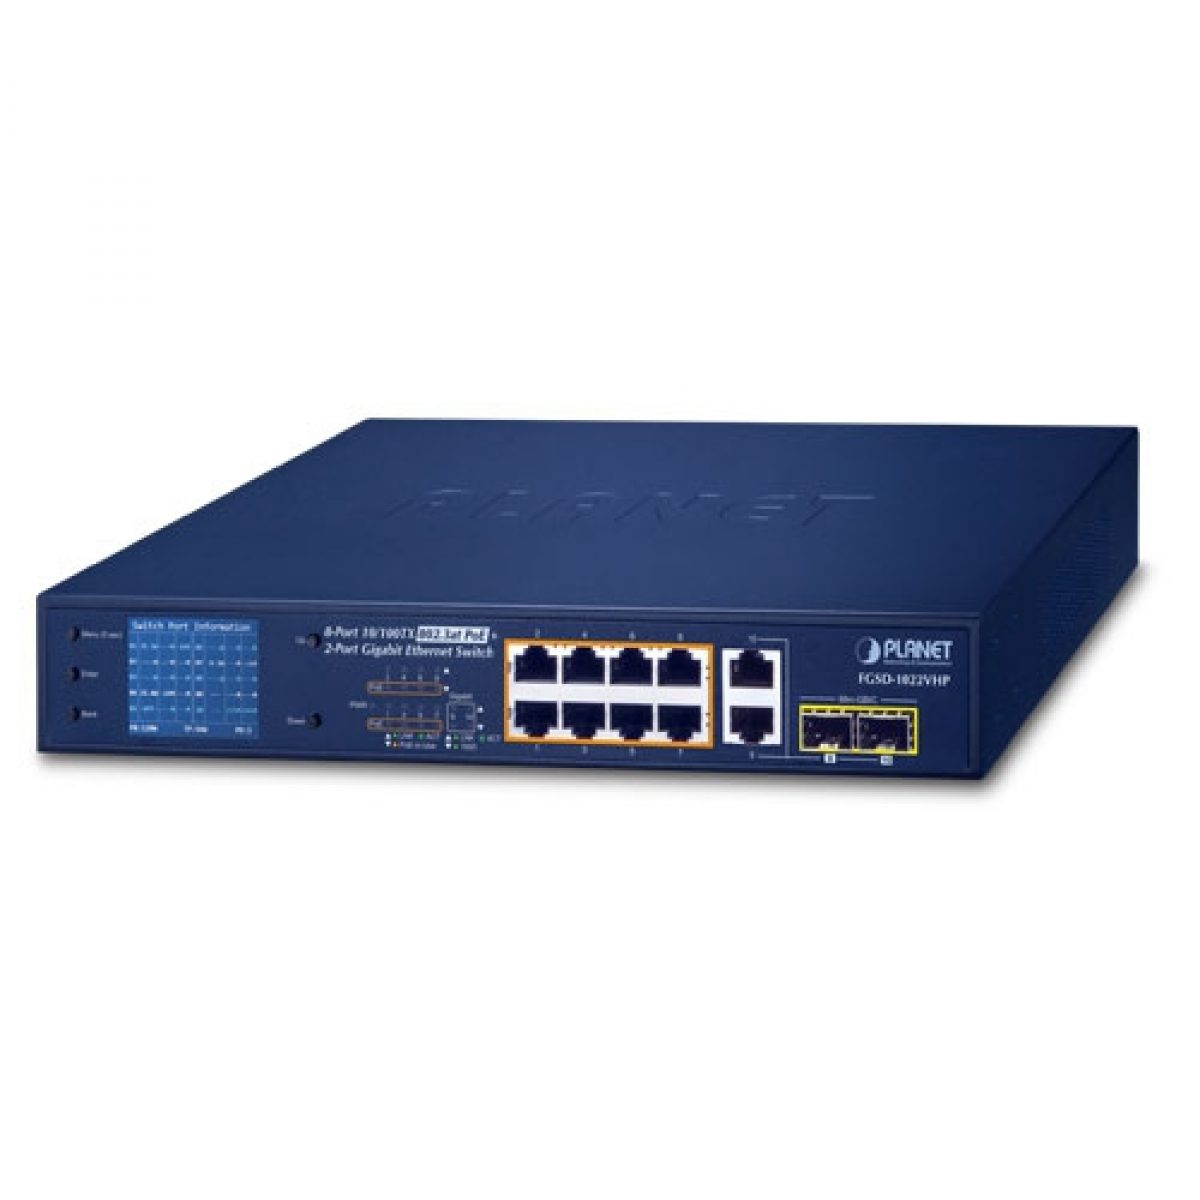 FGSD-1022VHP 8-Port 10/100TX 802.3at PoE + 2-Port Gigabit TP